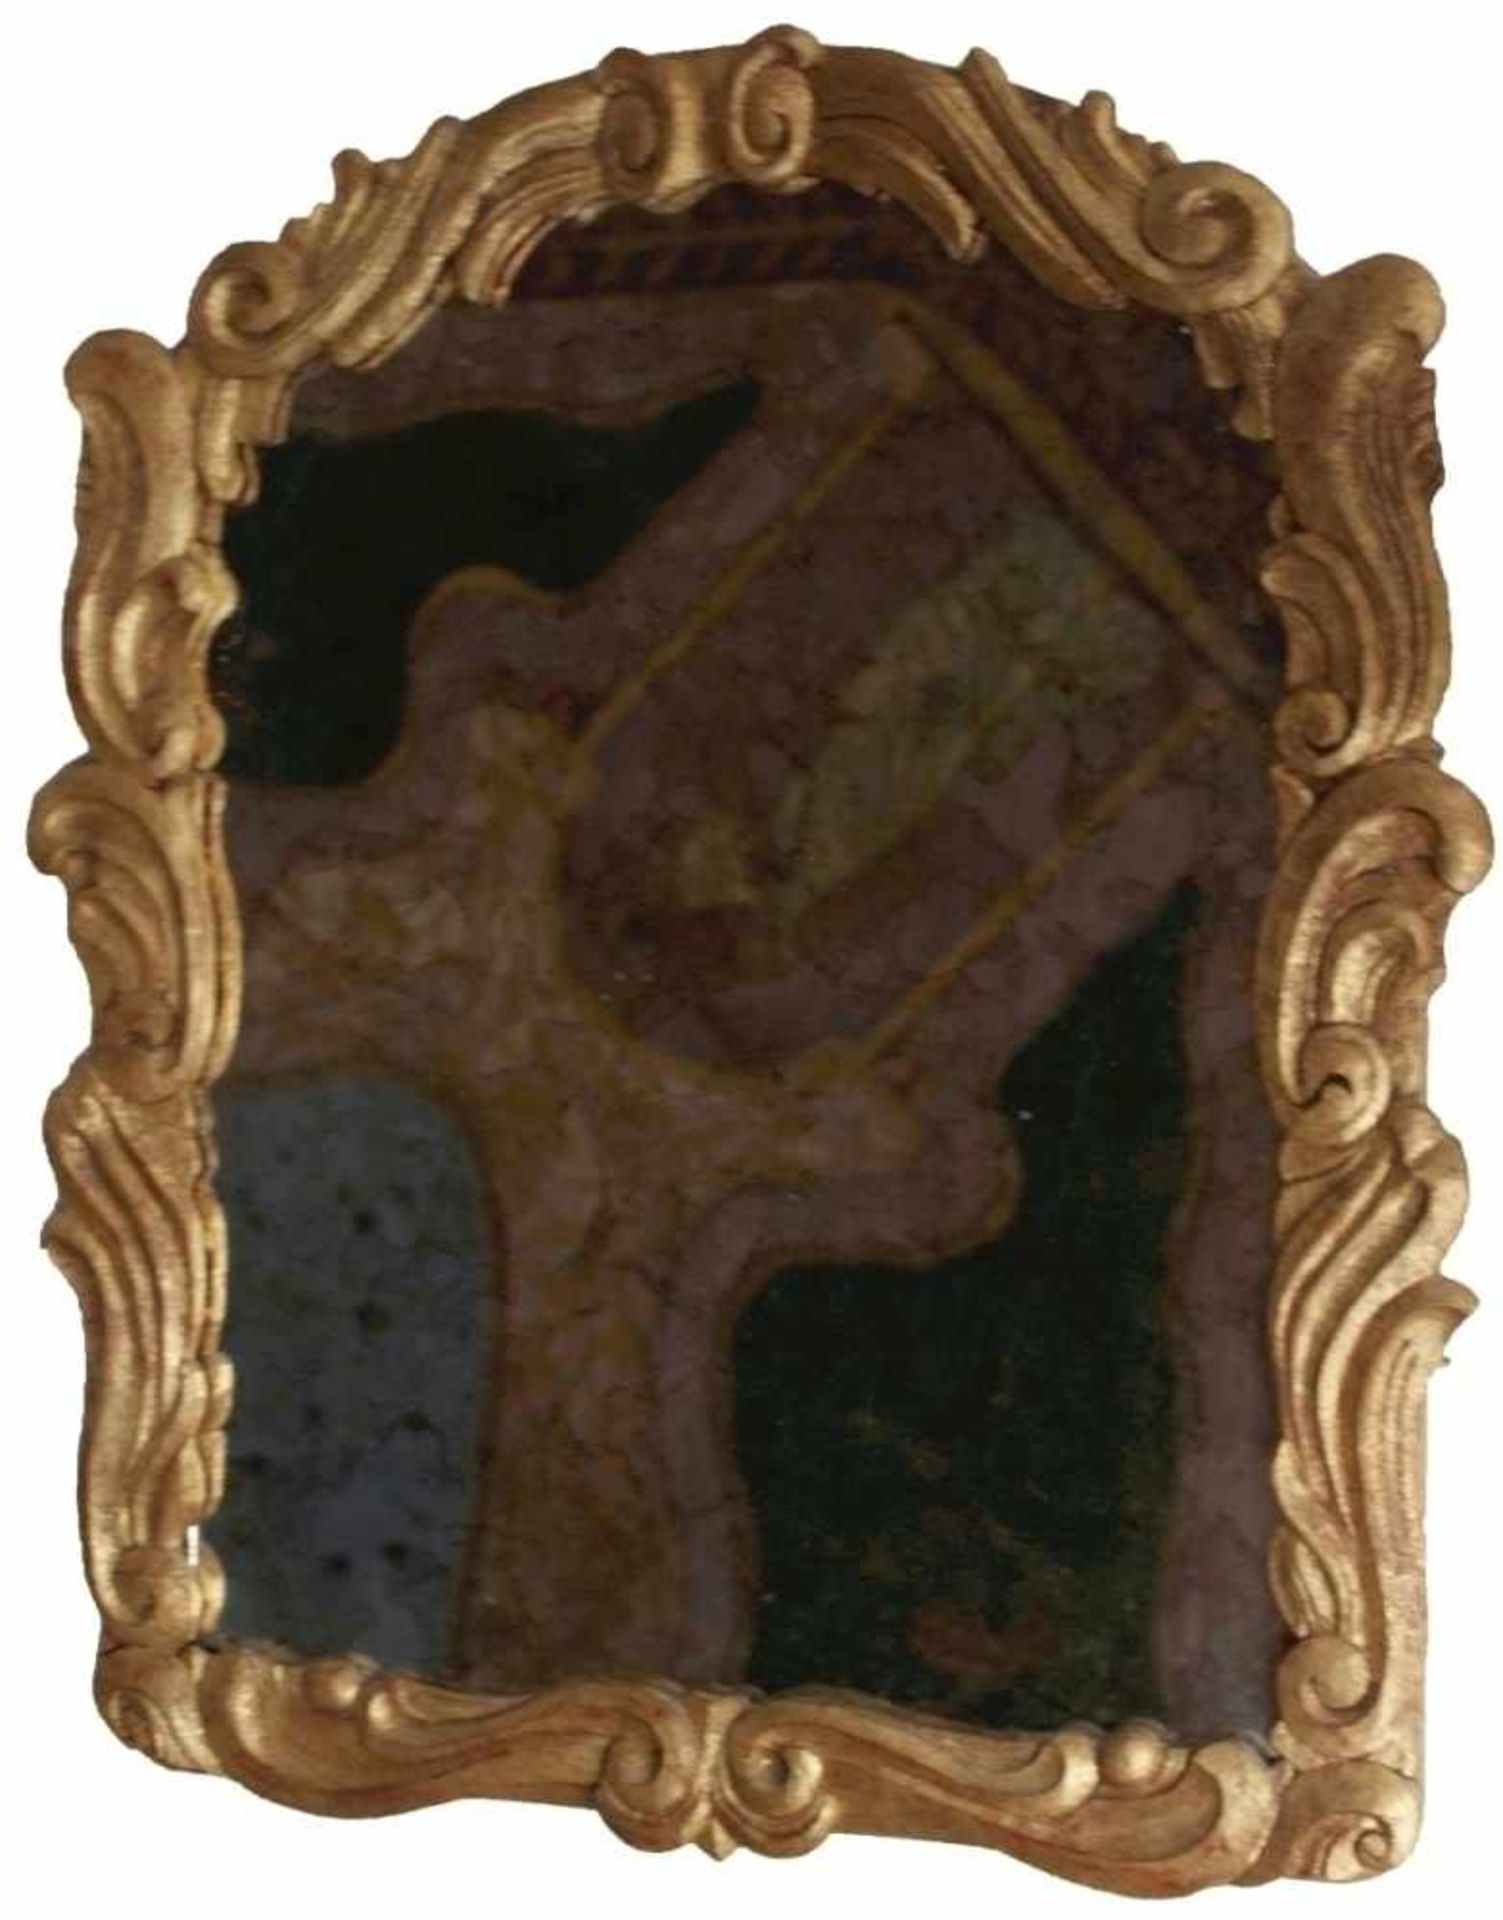 Spiegel im Barockstil 20.Jahrhundert, Holz geschnitzt, goldfarben, verziert mit Blattwerk, Maße